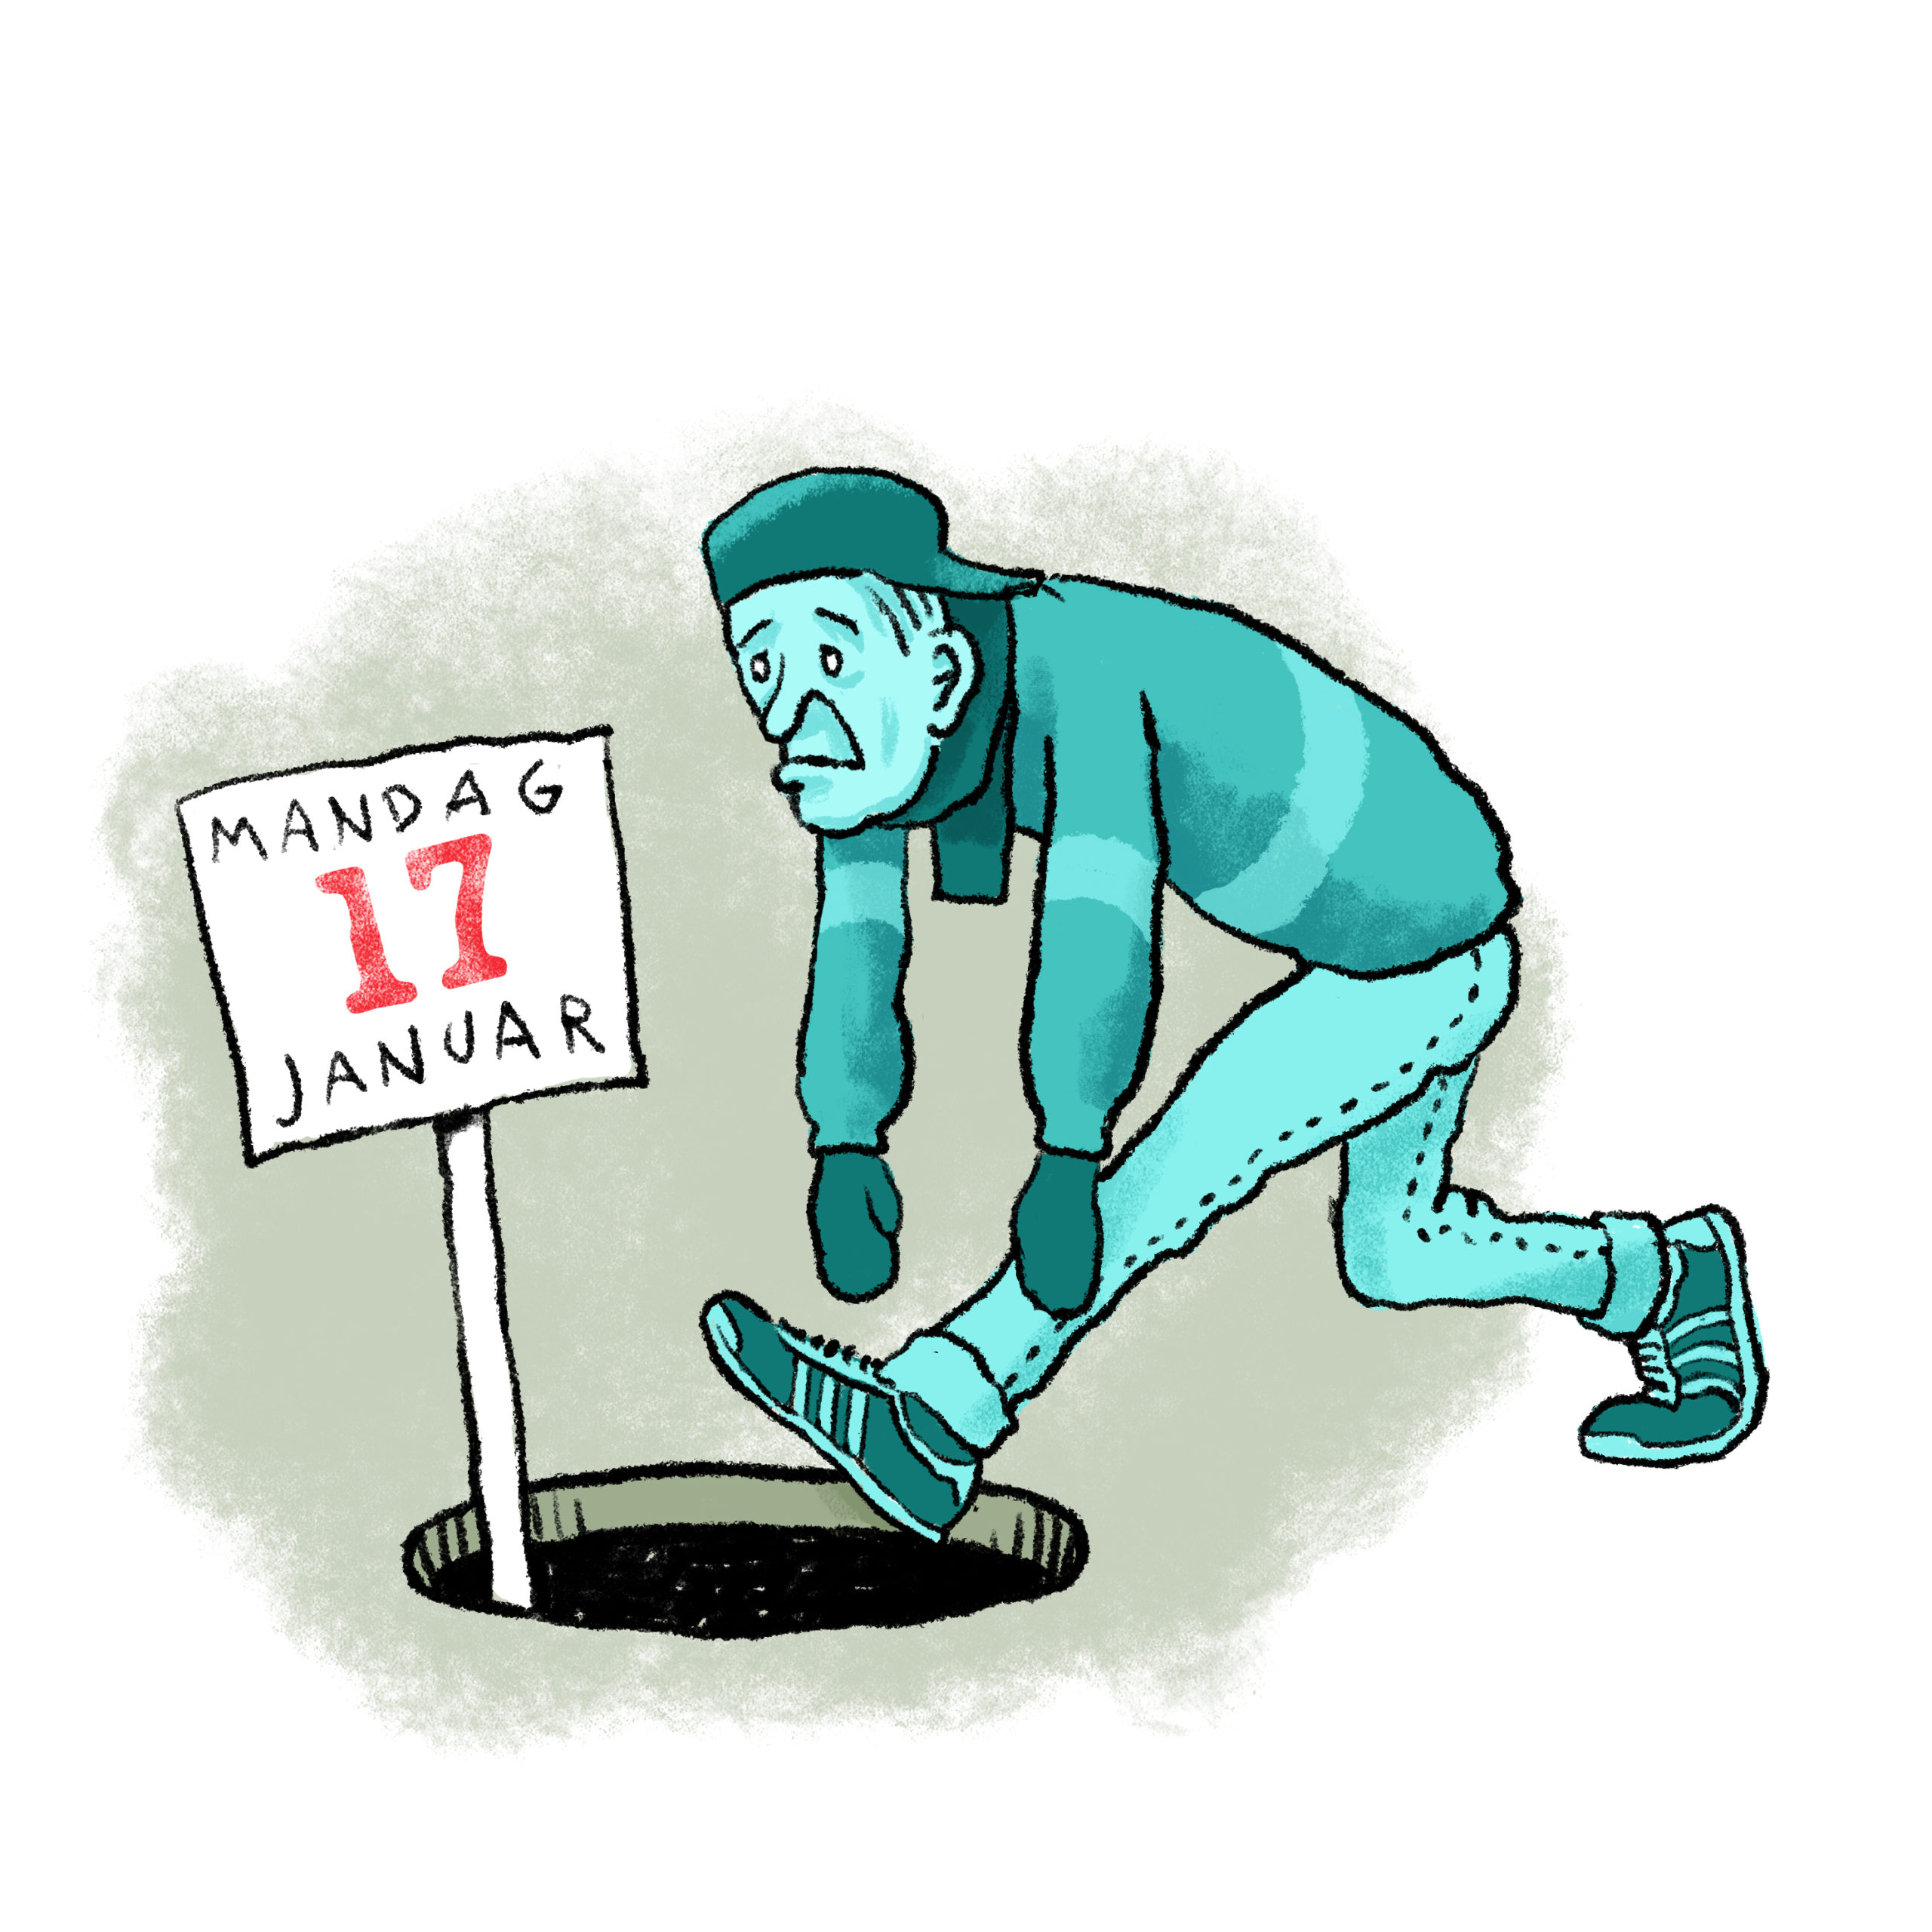 En illustrasjon av en blå mann som går rett mot et svart hull med et skilt stikkende opp hvor det står "17. januar"